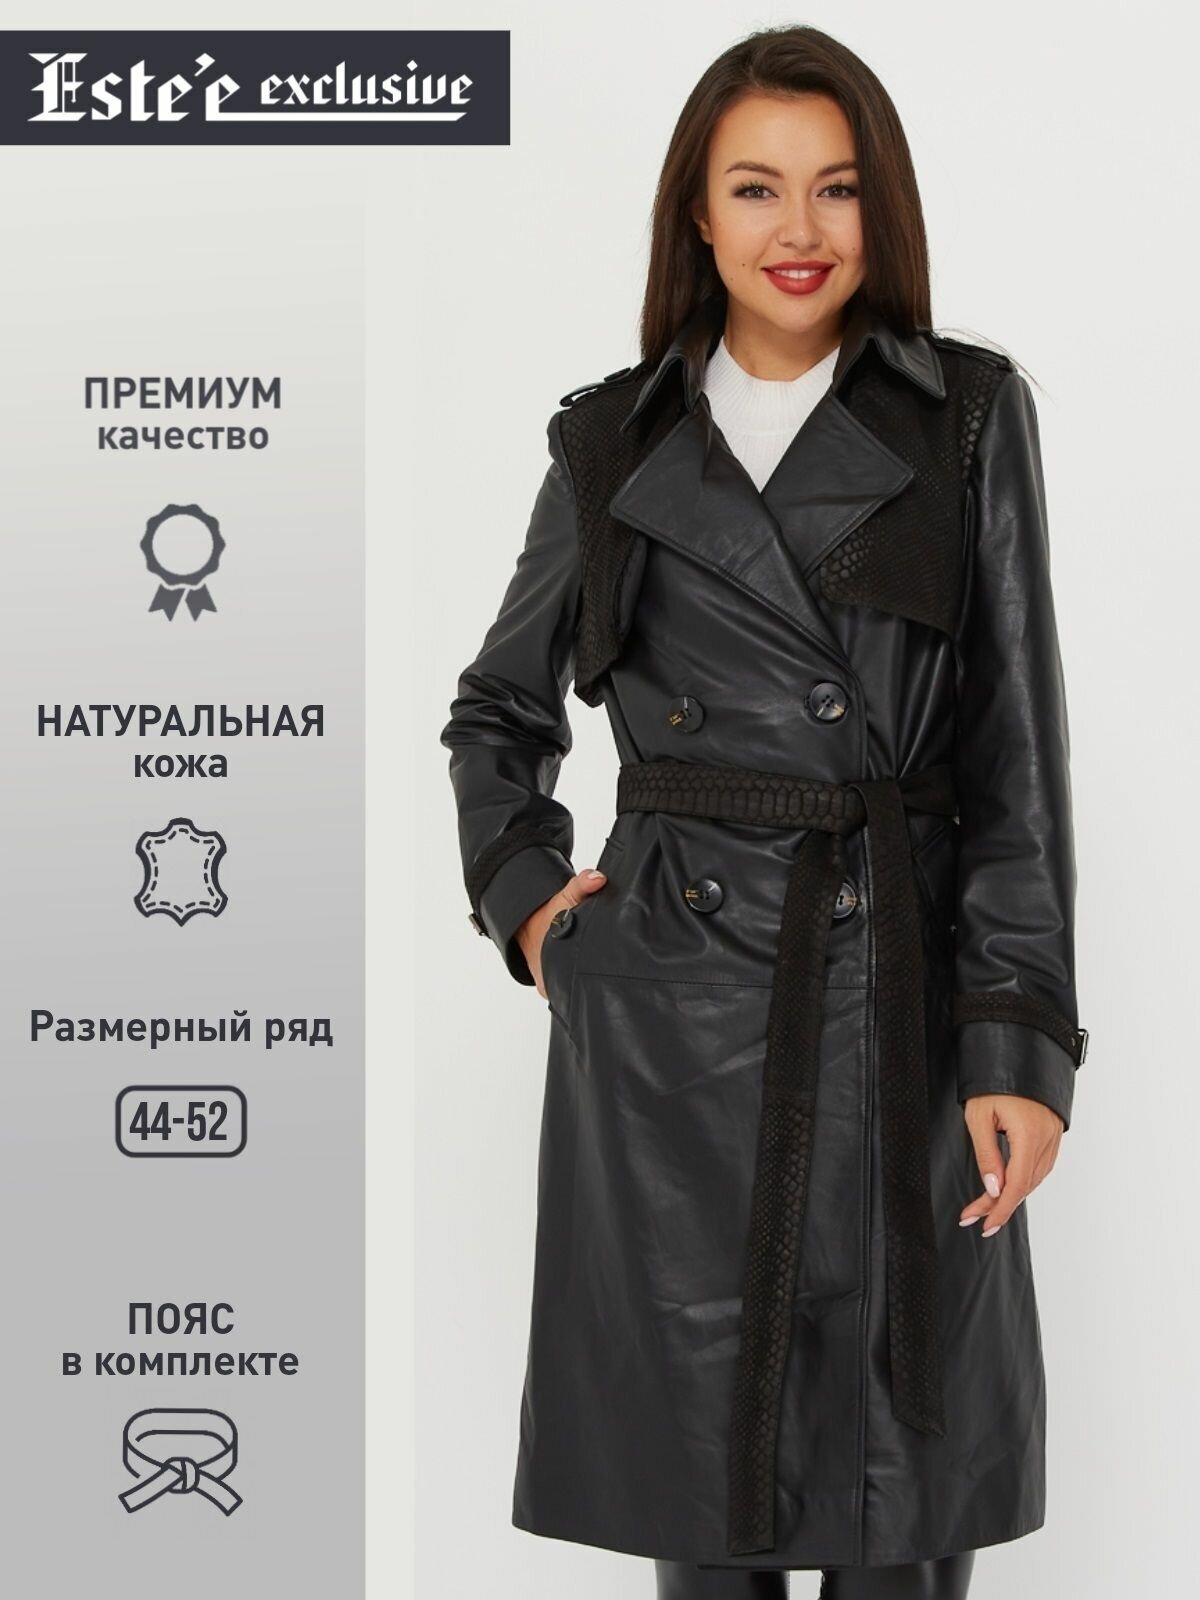 Кожаный плащ женский Este'e exclusive Fur&Leather модный демисезонный удлинённый тренч 